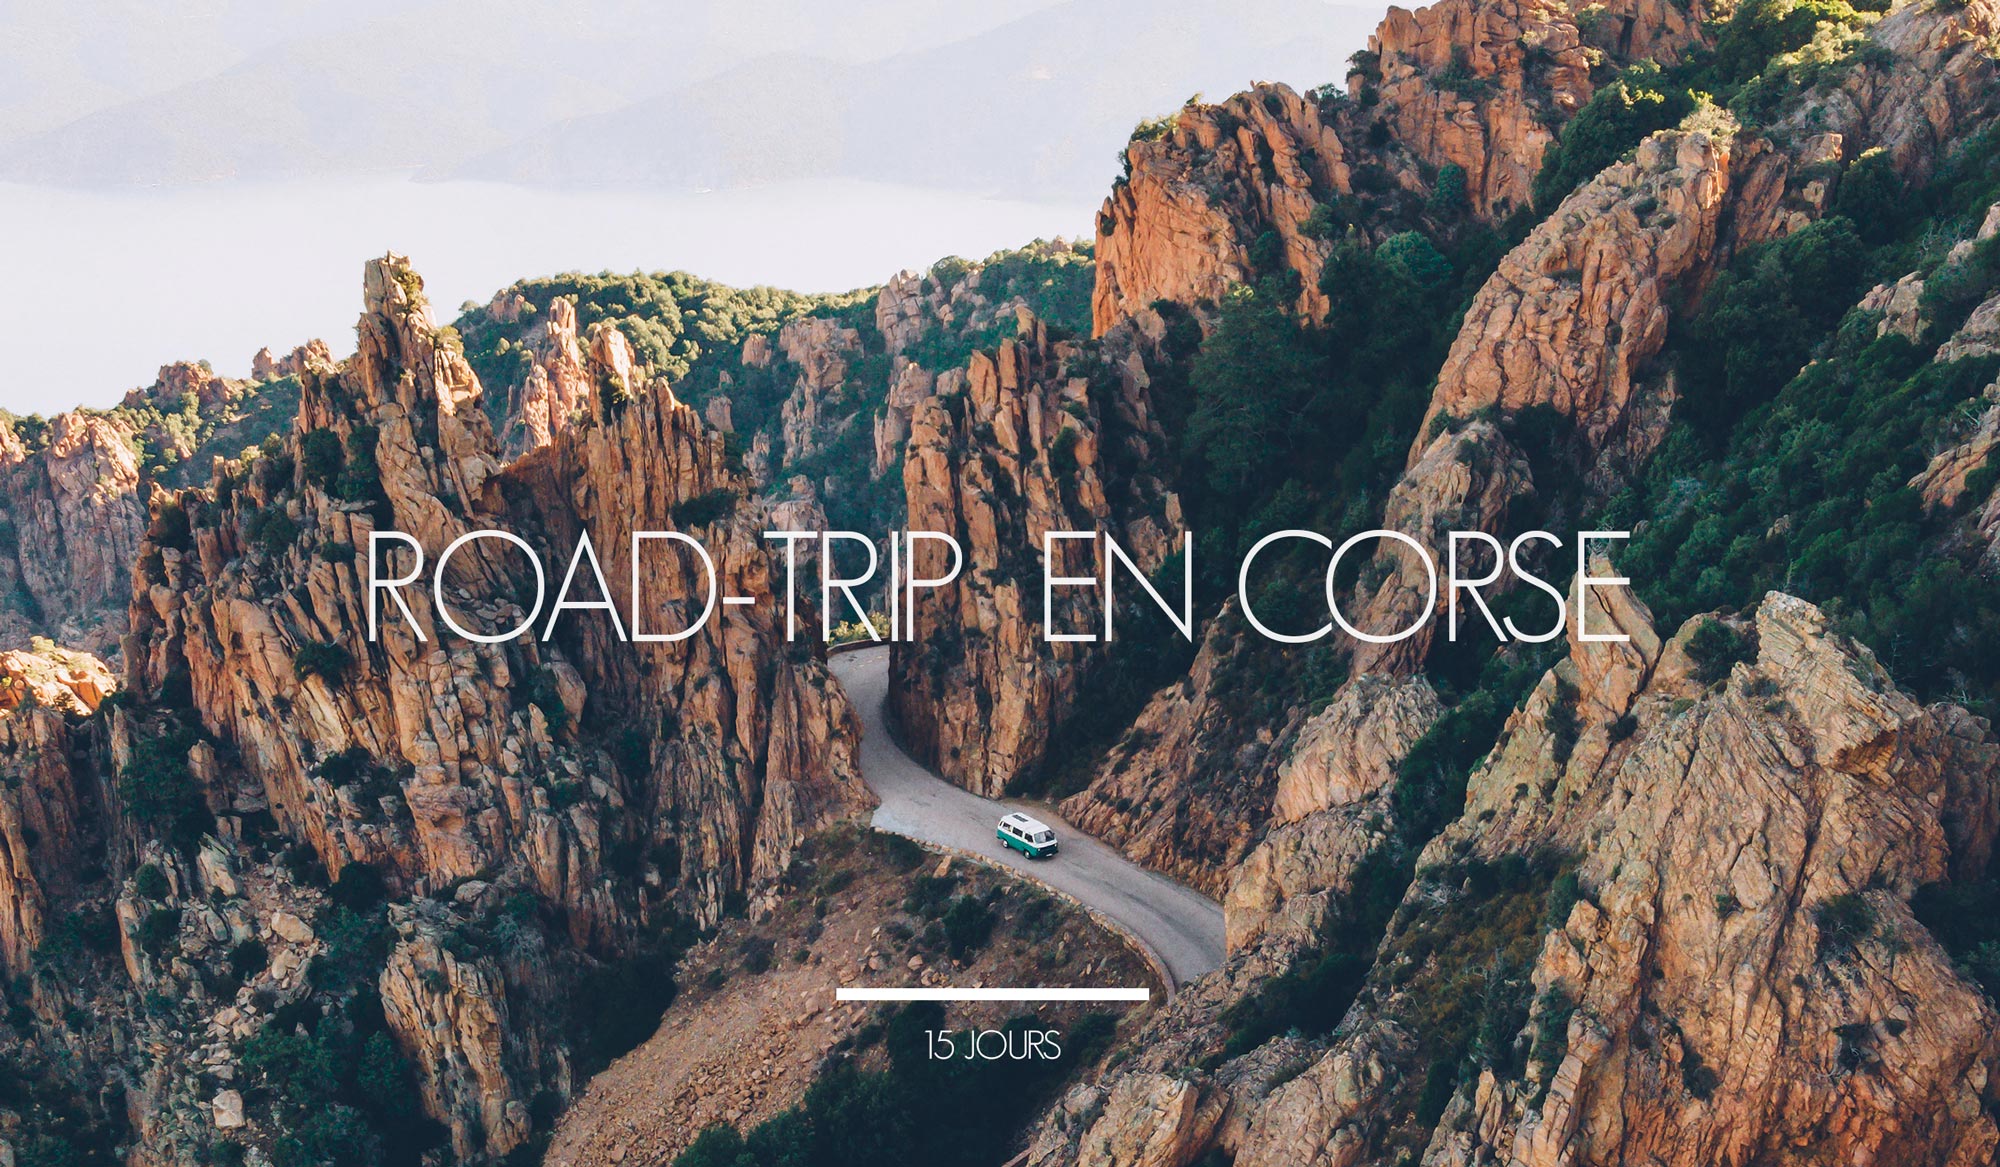 Road Trip en Corse, 15 jours - Blog Voyage